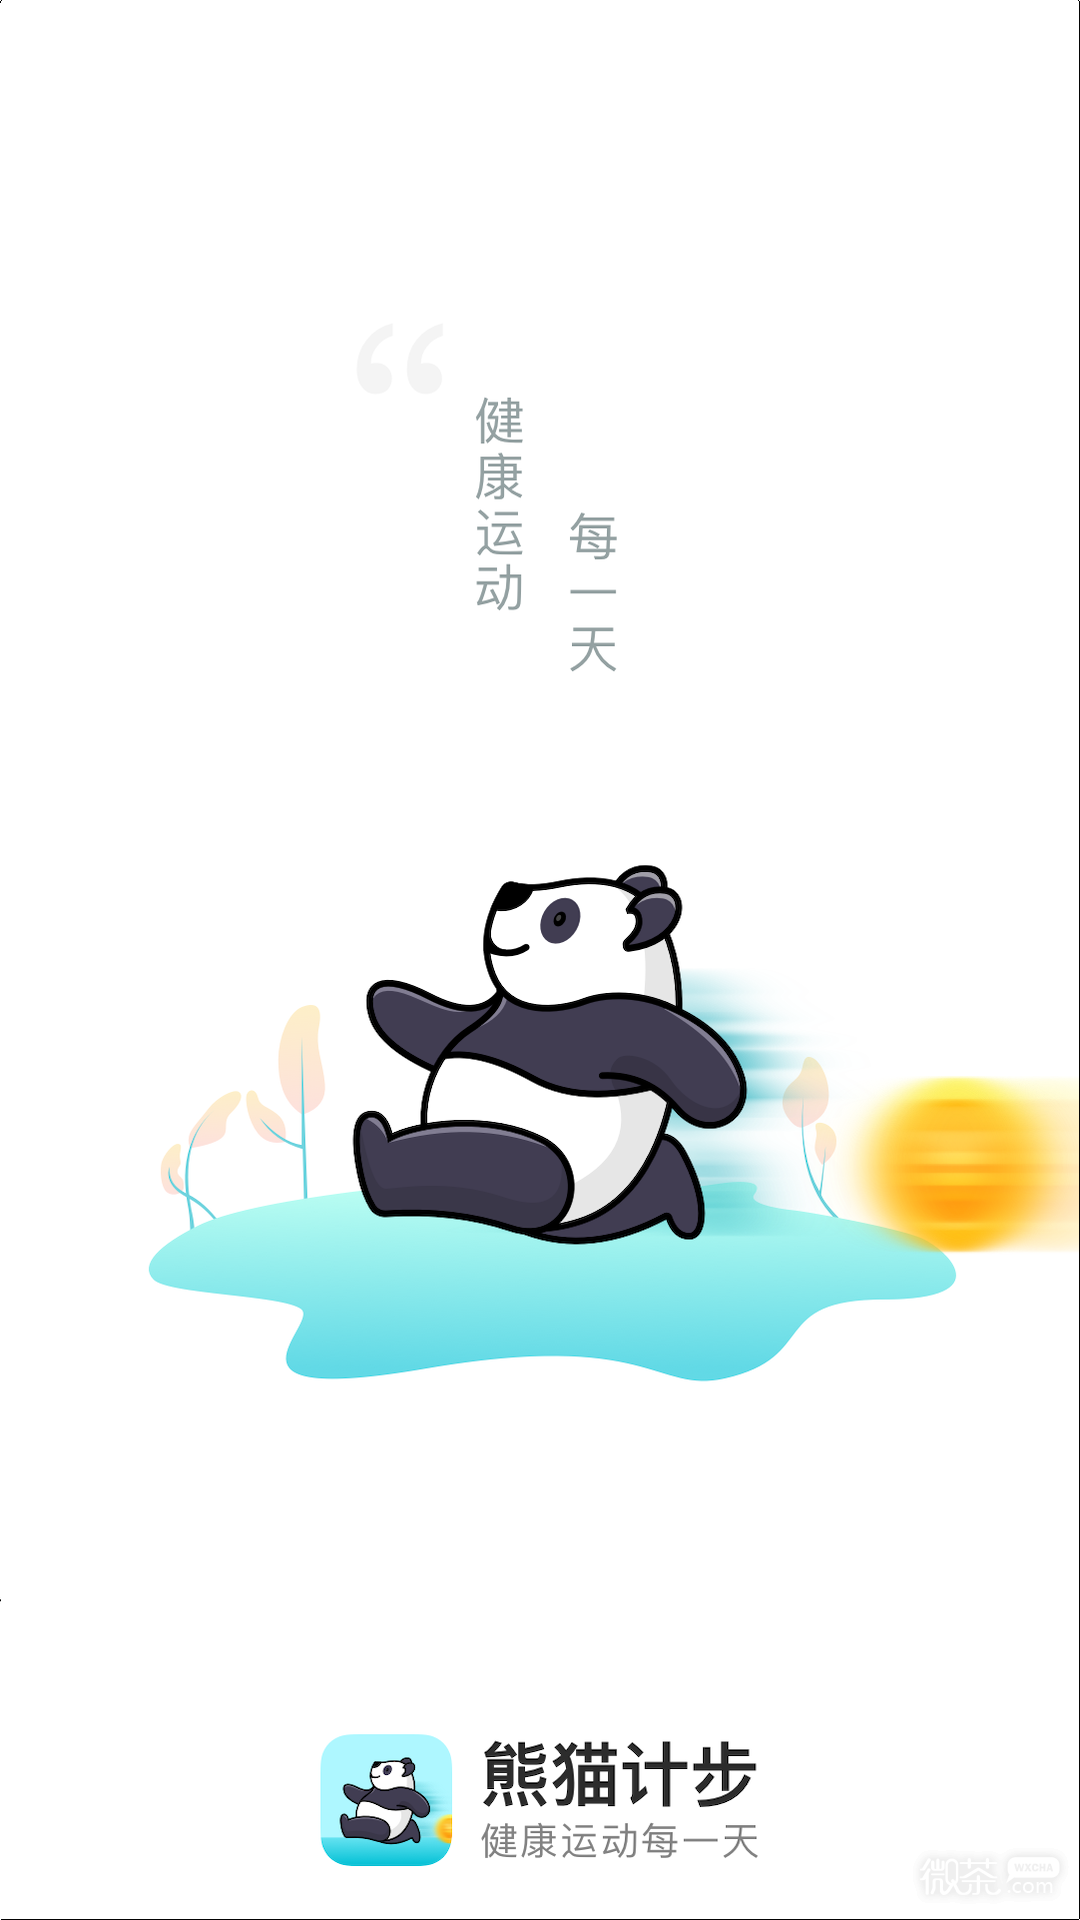 熊猫计步